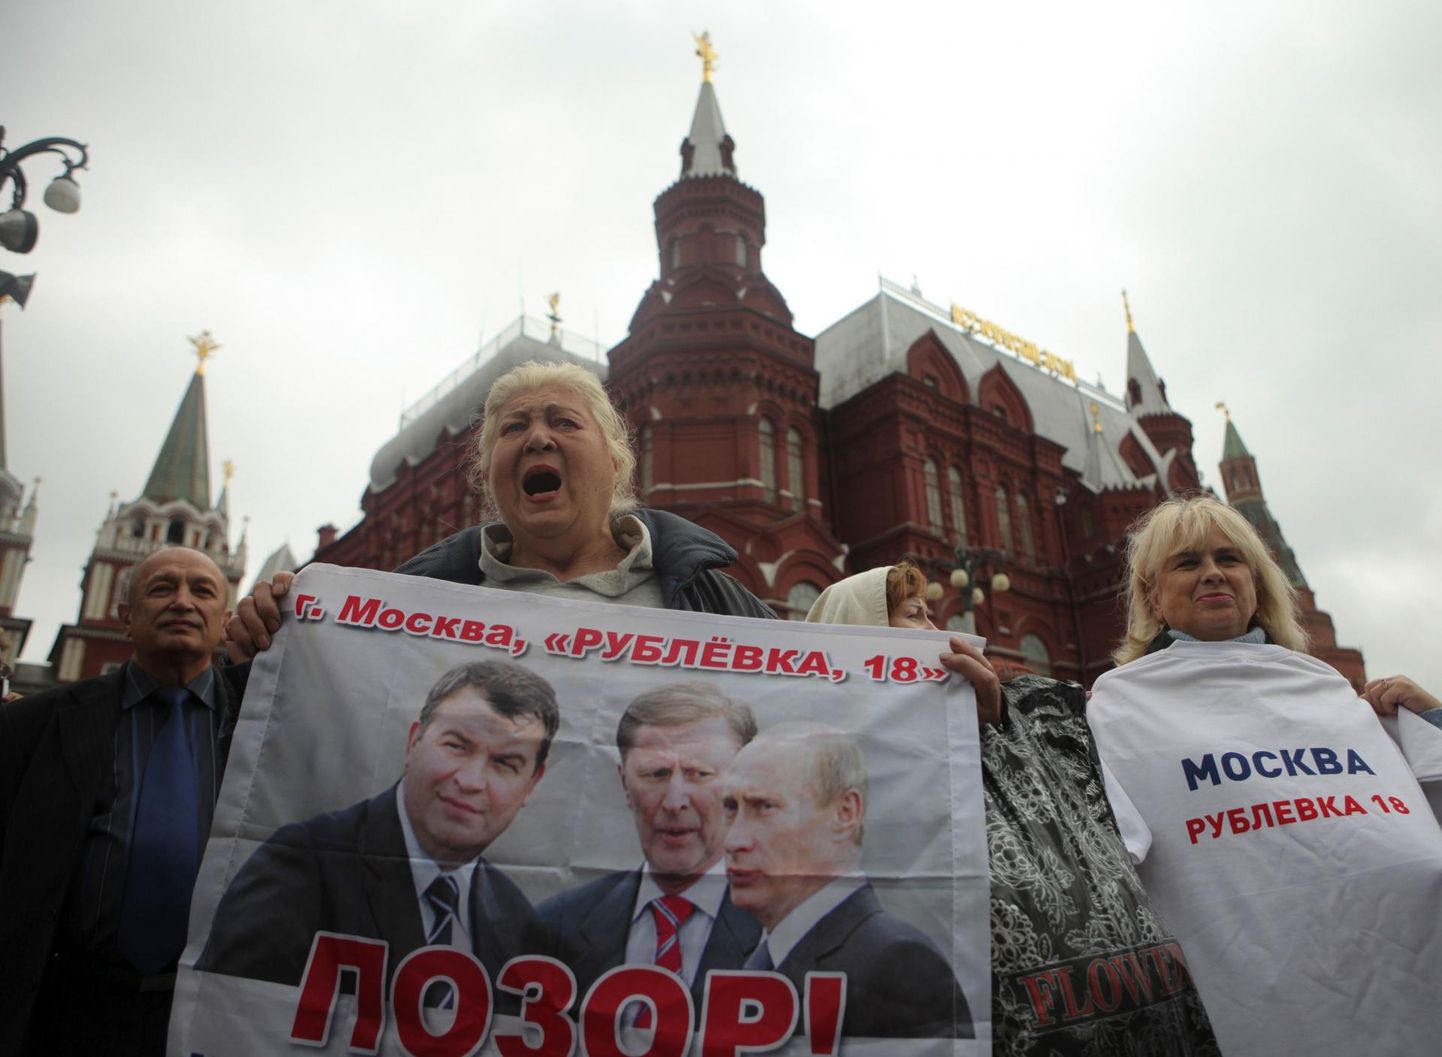 Pikalt korraldasid oma varast pettuse läbi ilma jäänud Gorki-2 endised osanikud meeleavaldusi, kuid nüüdseks on suurem osa inimesi lootuse kaotanud, paljud neist ka vahepeal surnud. Pildil Rubljovkas kinnistud kaotanud aktsionärid 2011. aasta sügisel Moskvas Punasel väljakul.  FOTO: Alexander Vaynshtein/Reuters/Scanpix